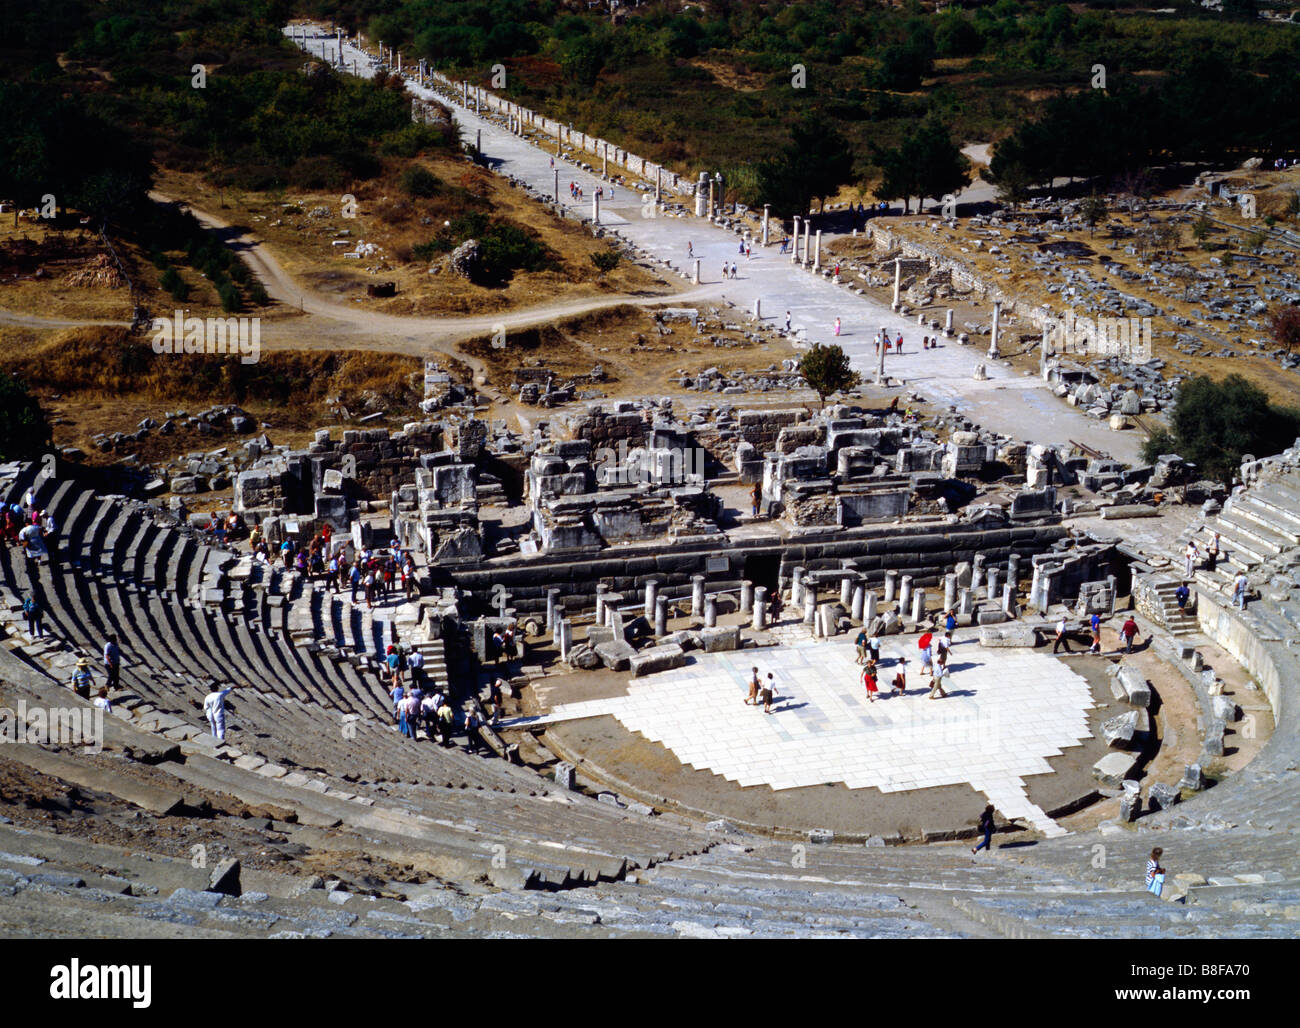 Amphitheatre in Ephesus Stock Photo